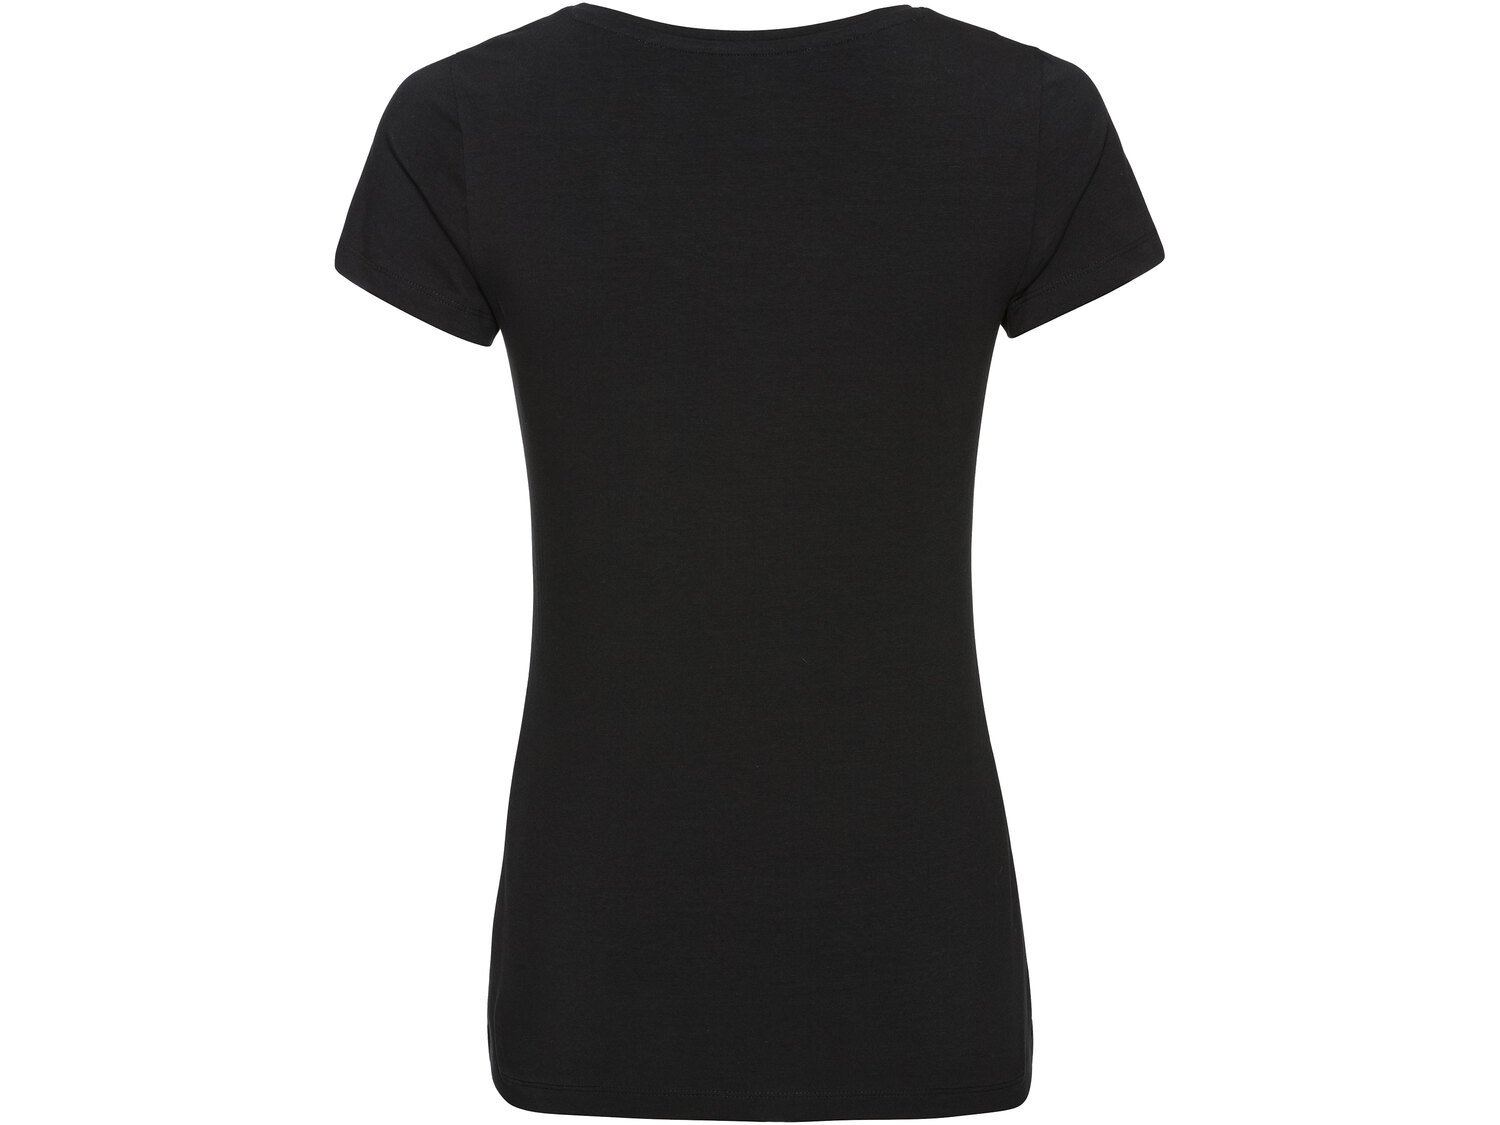 T-shirt damski Esmara, cena 19,99 PLN  
-  rozmiary: S-L
Dostępne rozmiary

Opis